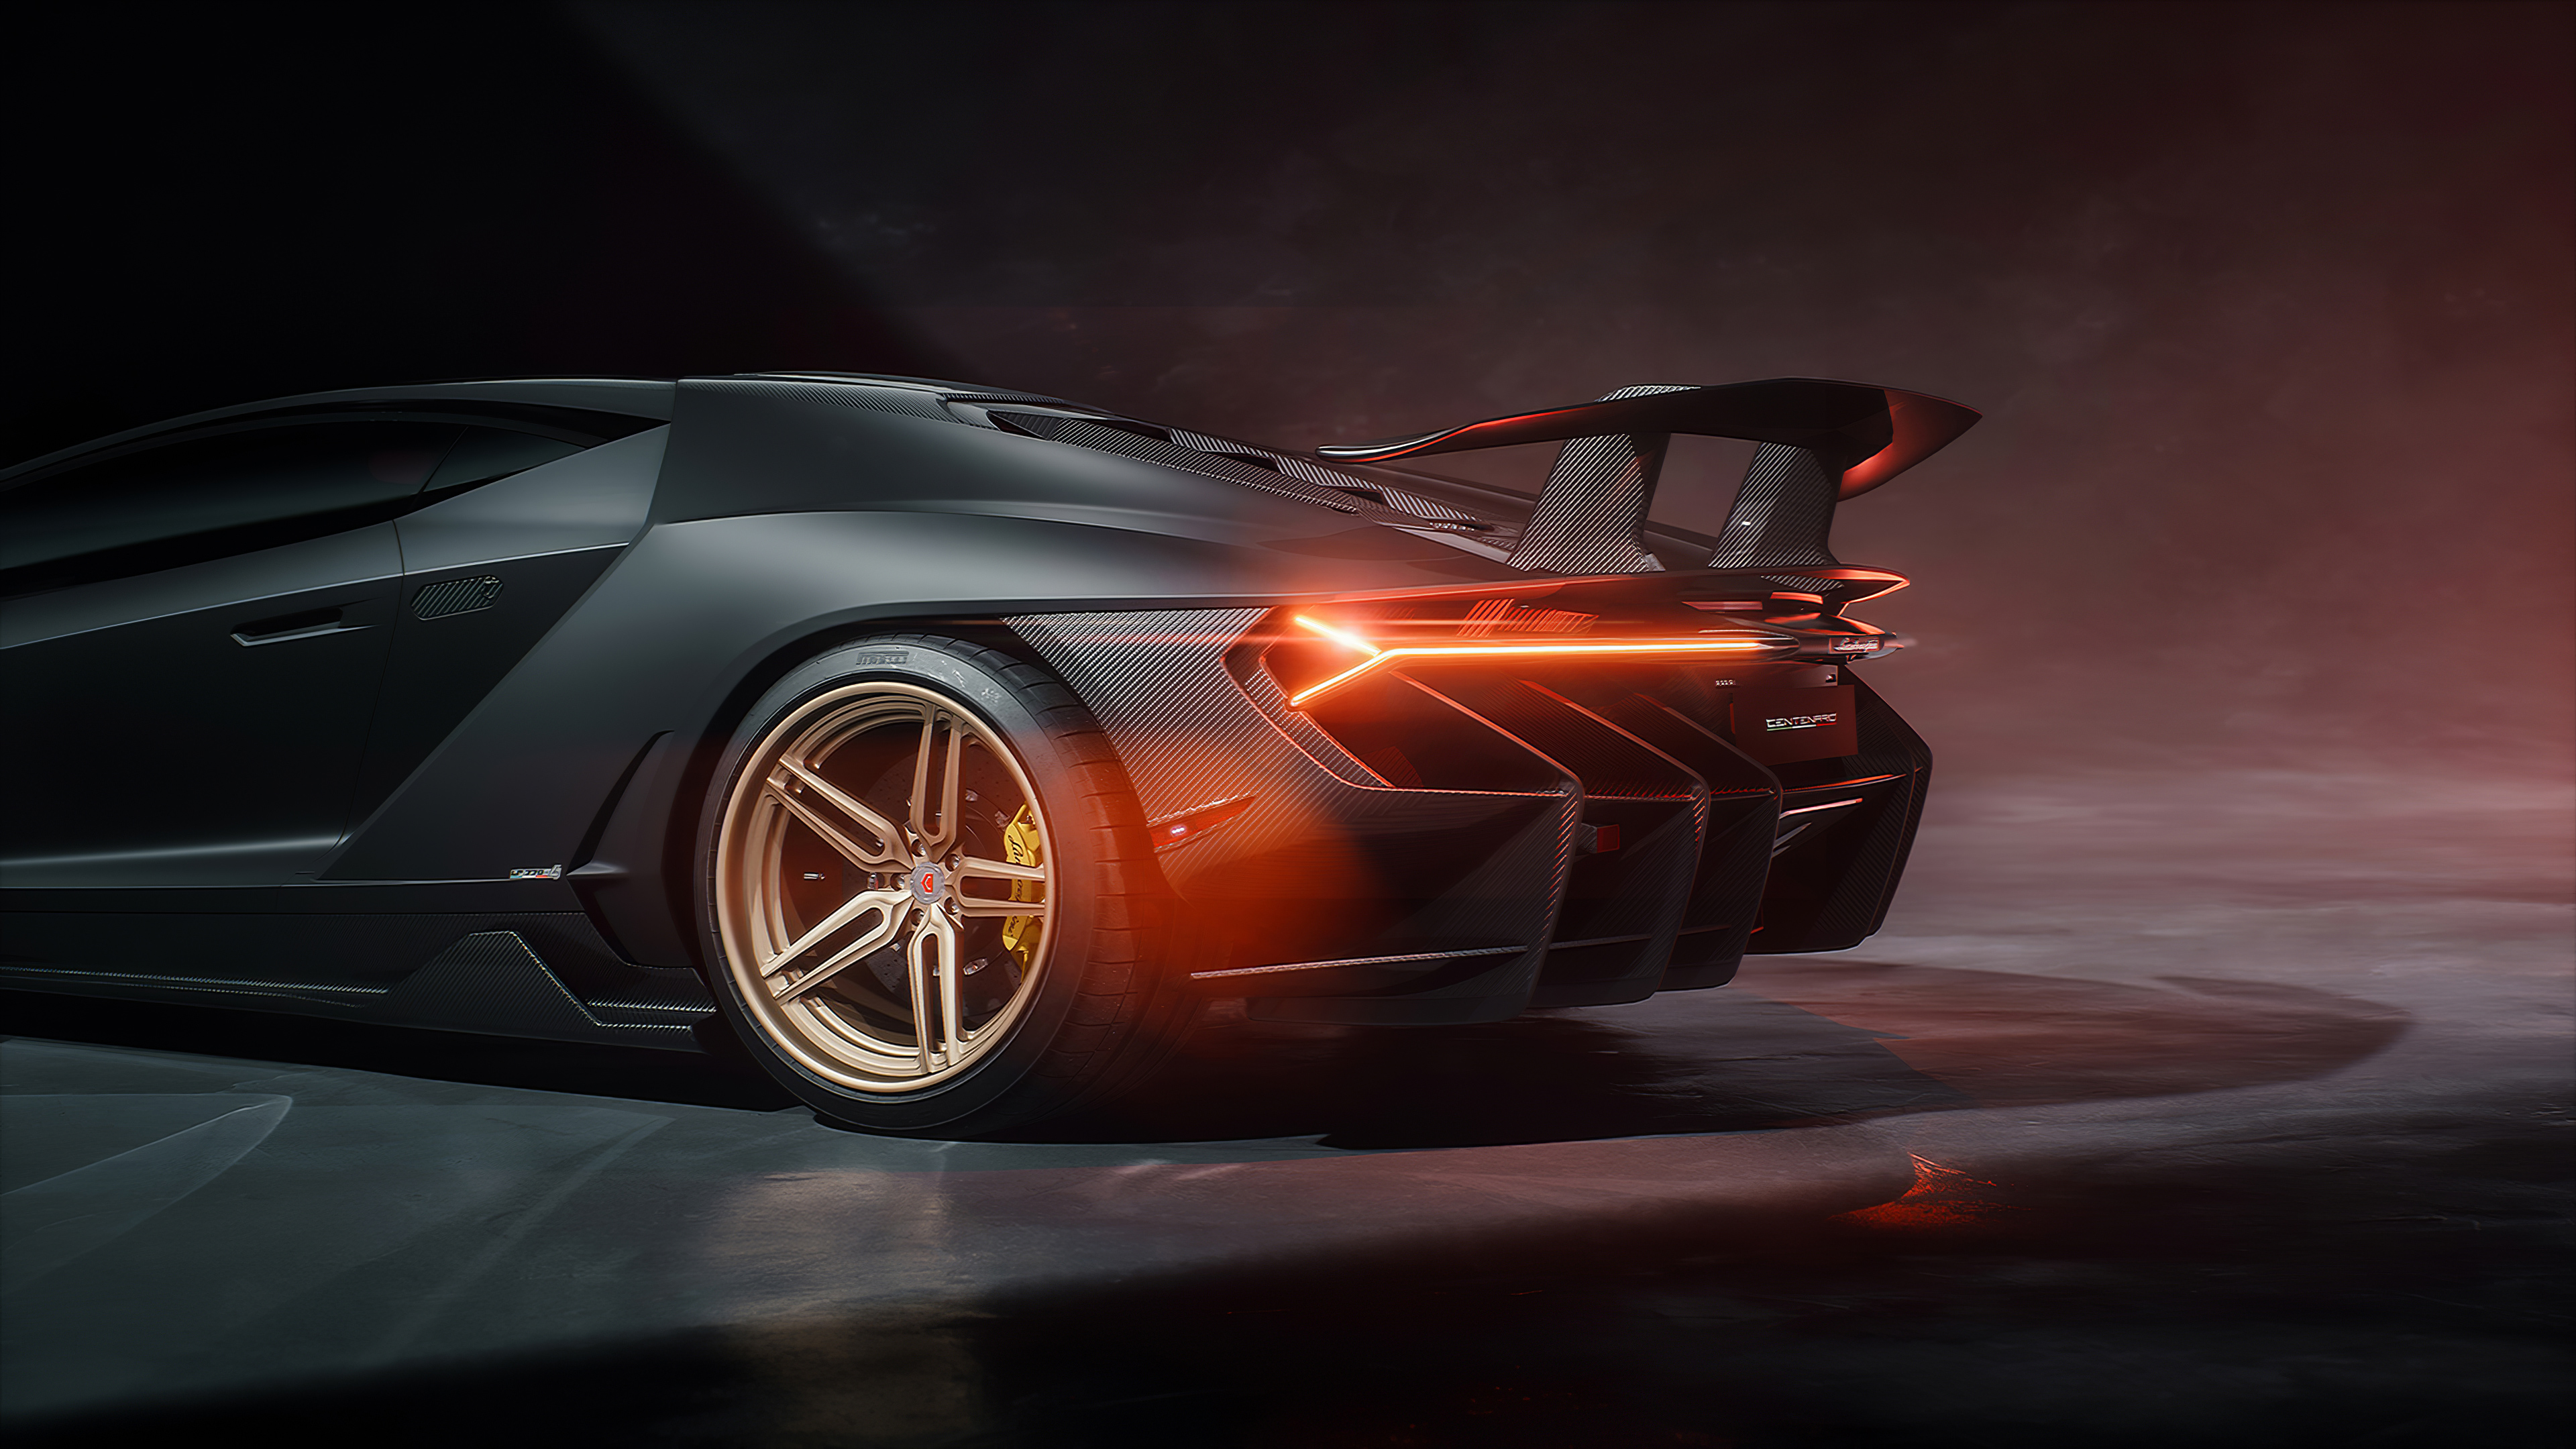 Lamborghini Centenario Rear 4k, HD Cars, 4k Wallpapers, Images